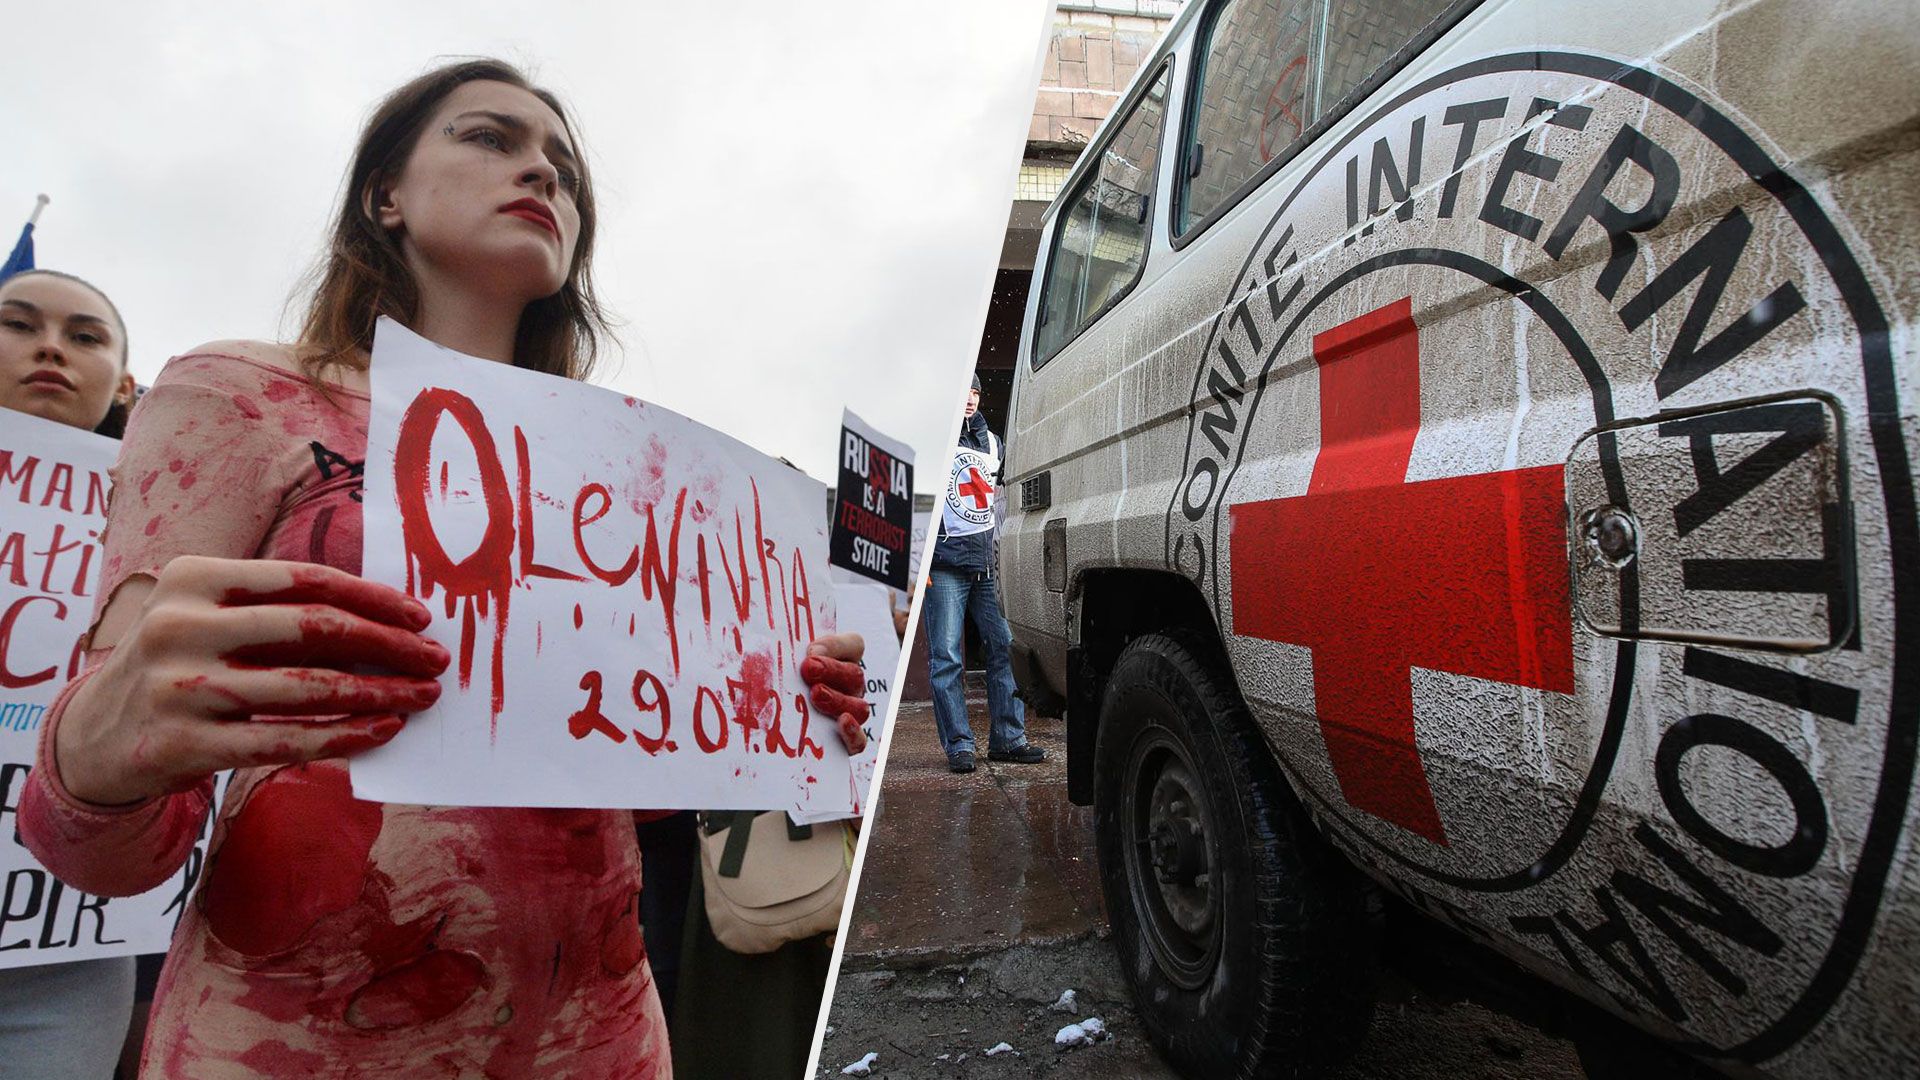 Червоний Хрест відвідував військовополонених в Оленівці перед терактом - Новини України - 24 Канал